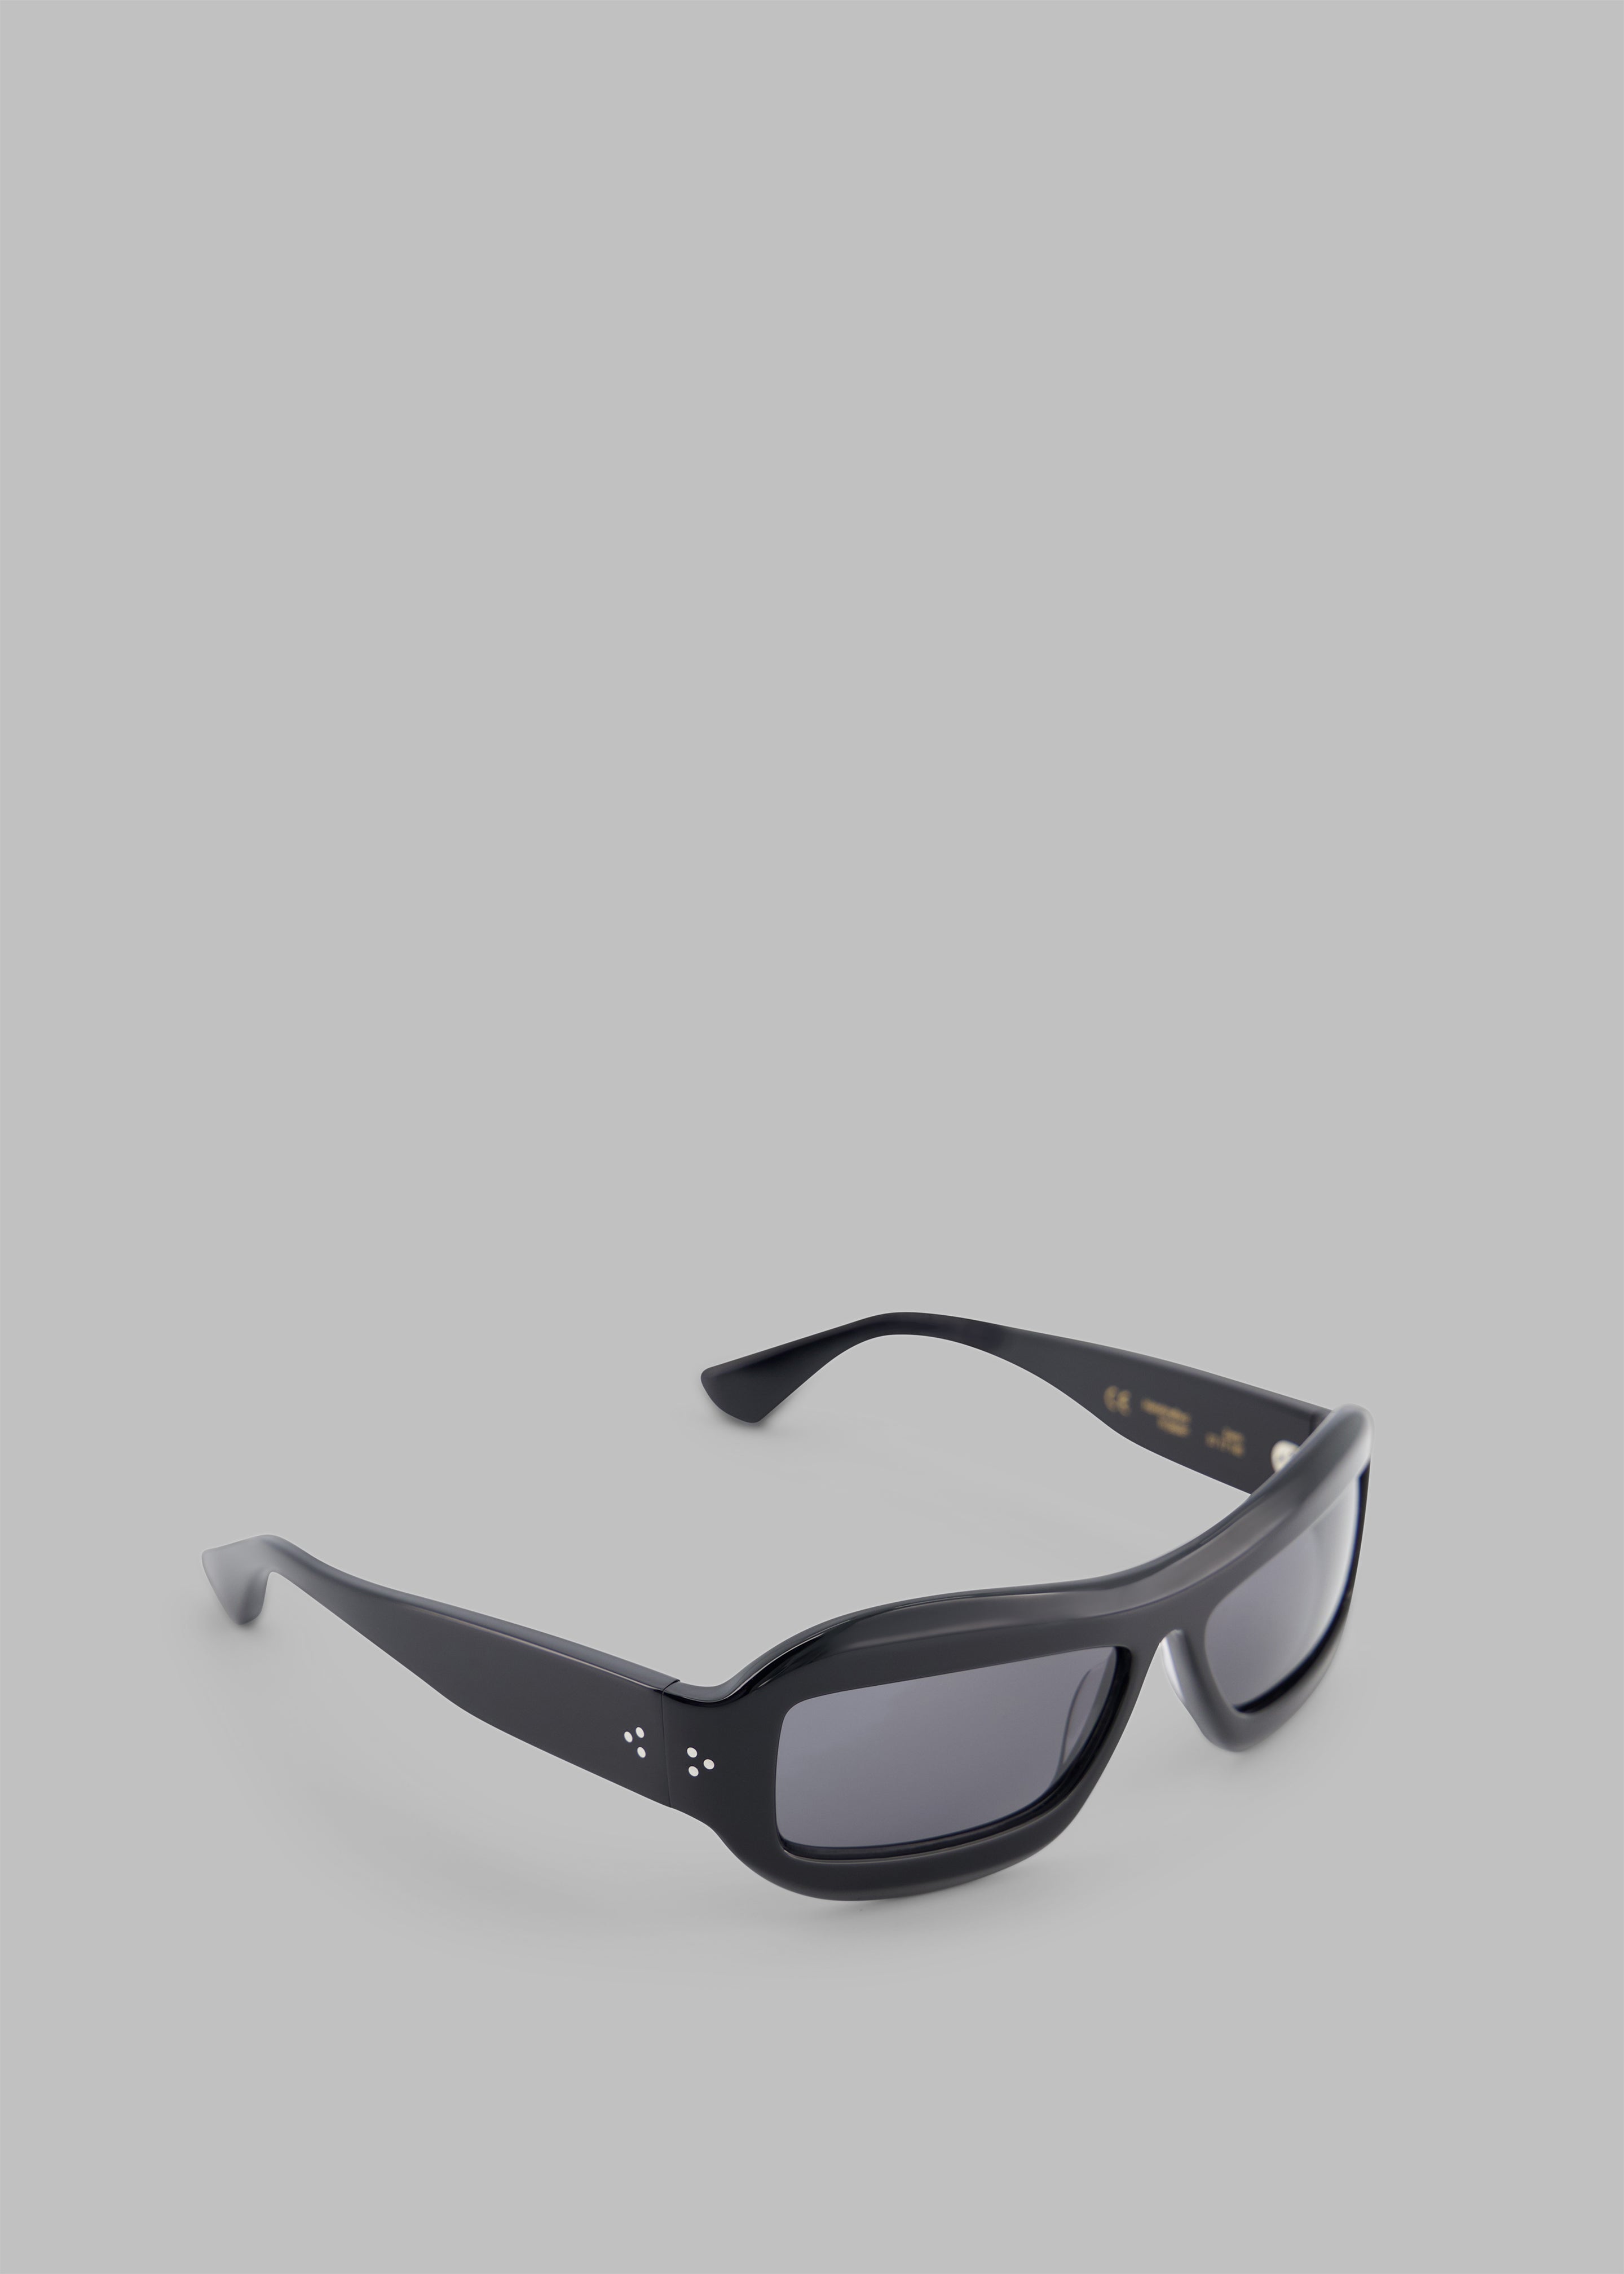 Port Tanger Zarin Sunglasses - Black Acetate/Black Lens - 4